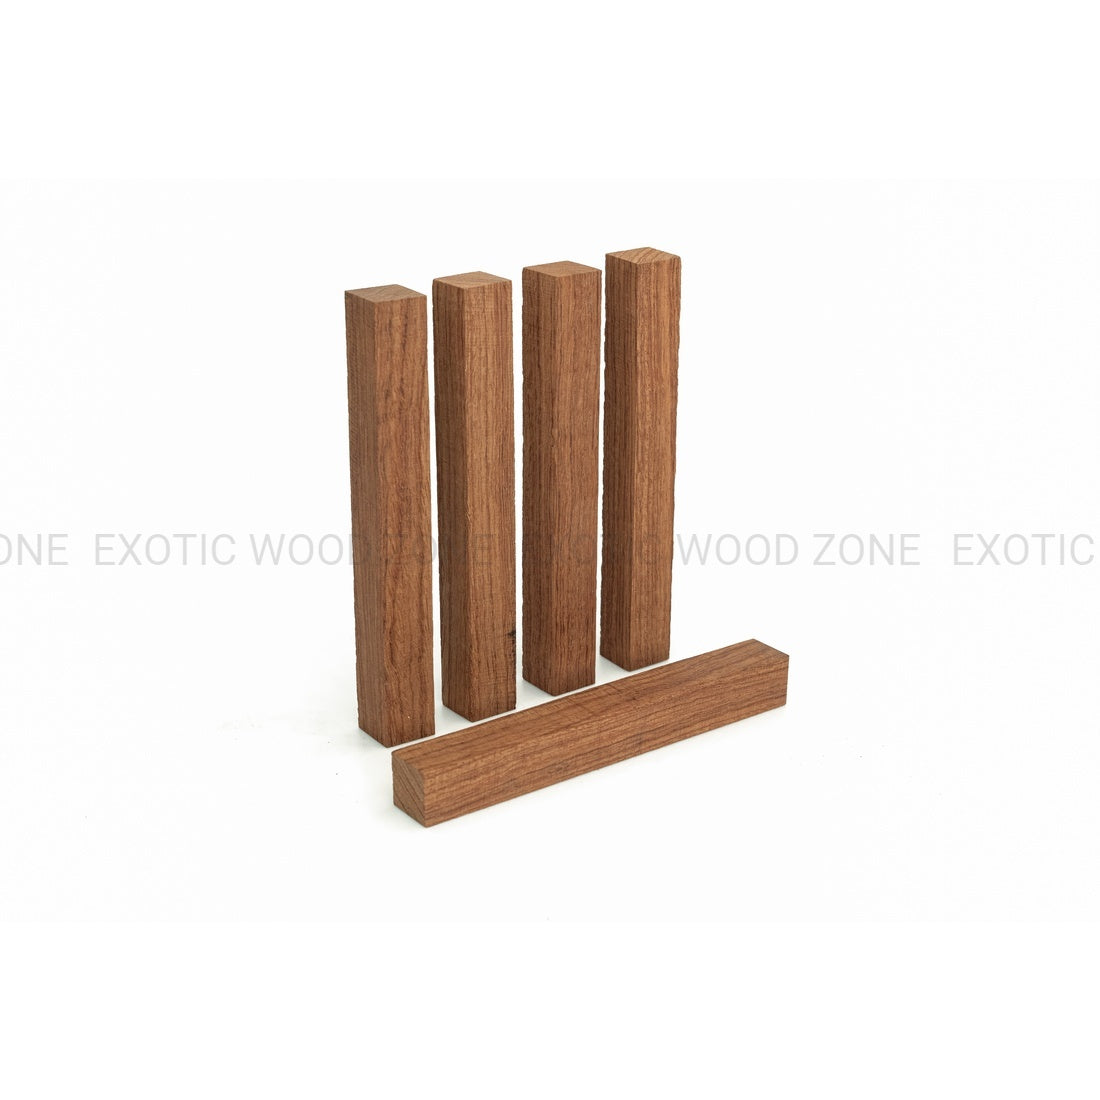 Bubinga Wood Pen Blanks - Exotic Wood Zone - Buy online Across USA 